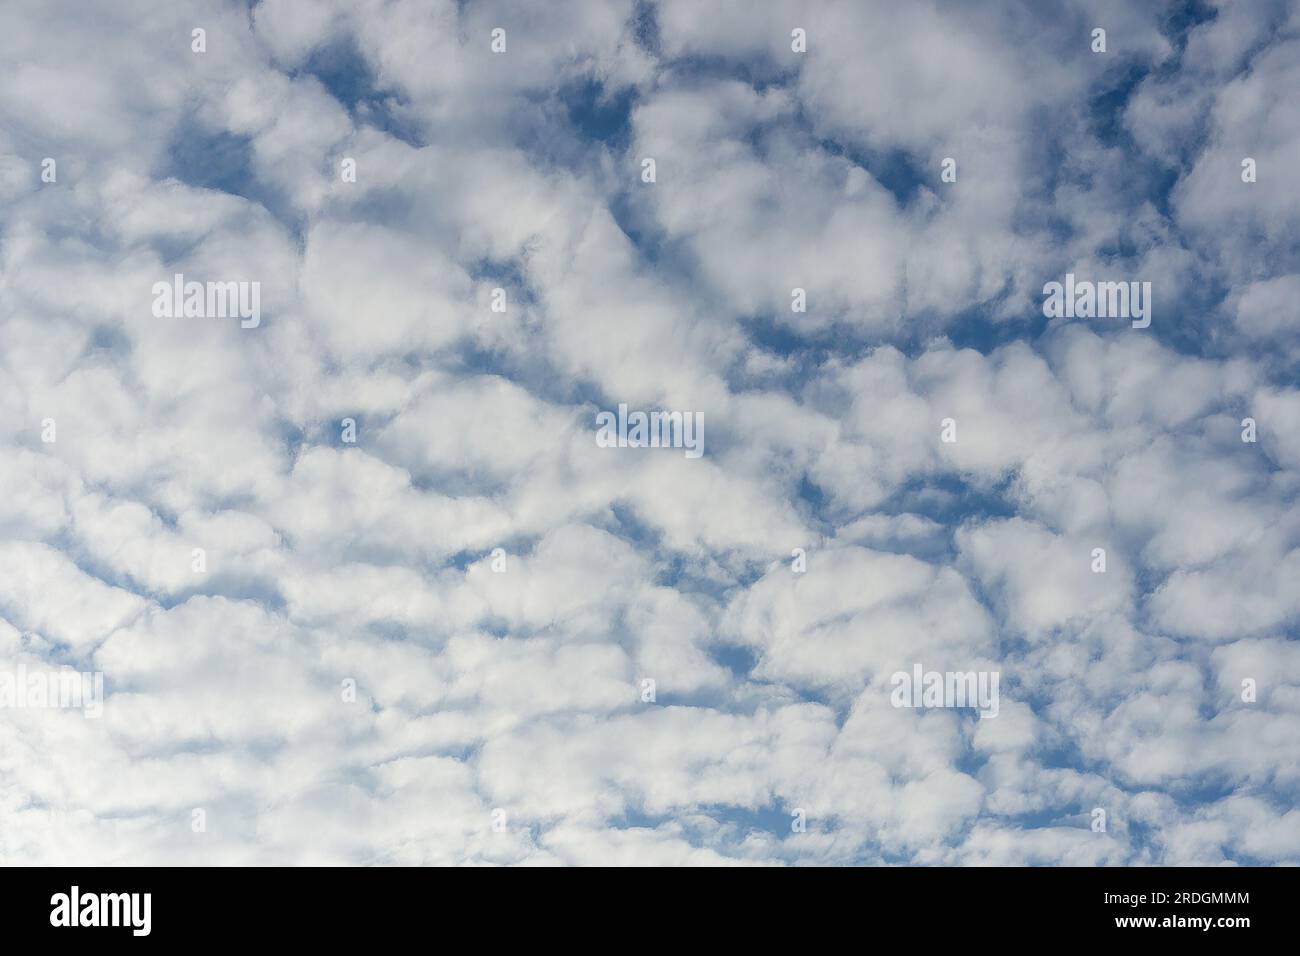 Das Foto zeigt die Schönheit der Natur mit weißen, flauschigen Wolken, die über einen hellblauen Himmel verstreut sind. Die Wolken haben eine abgerundete Form und sind weich Stockfoto